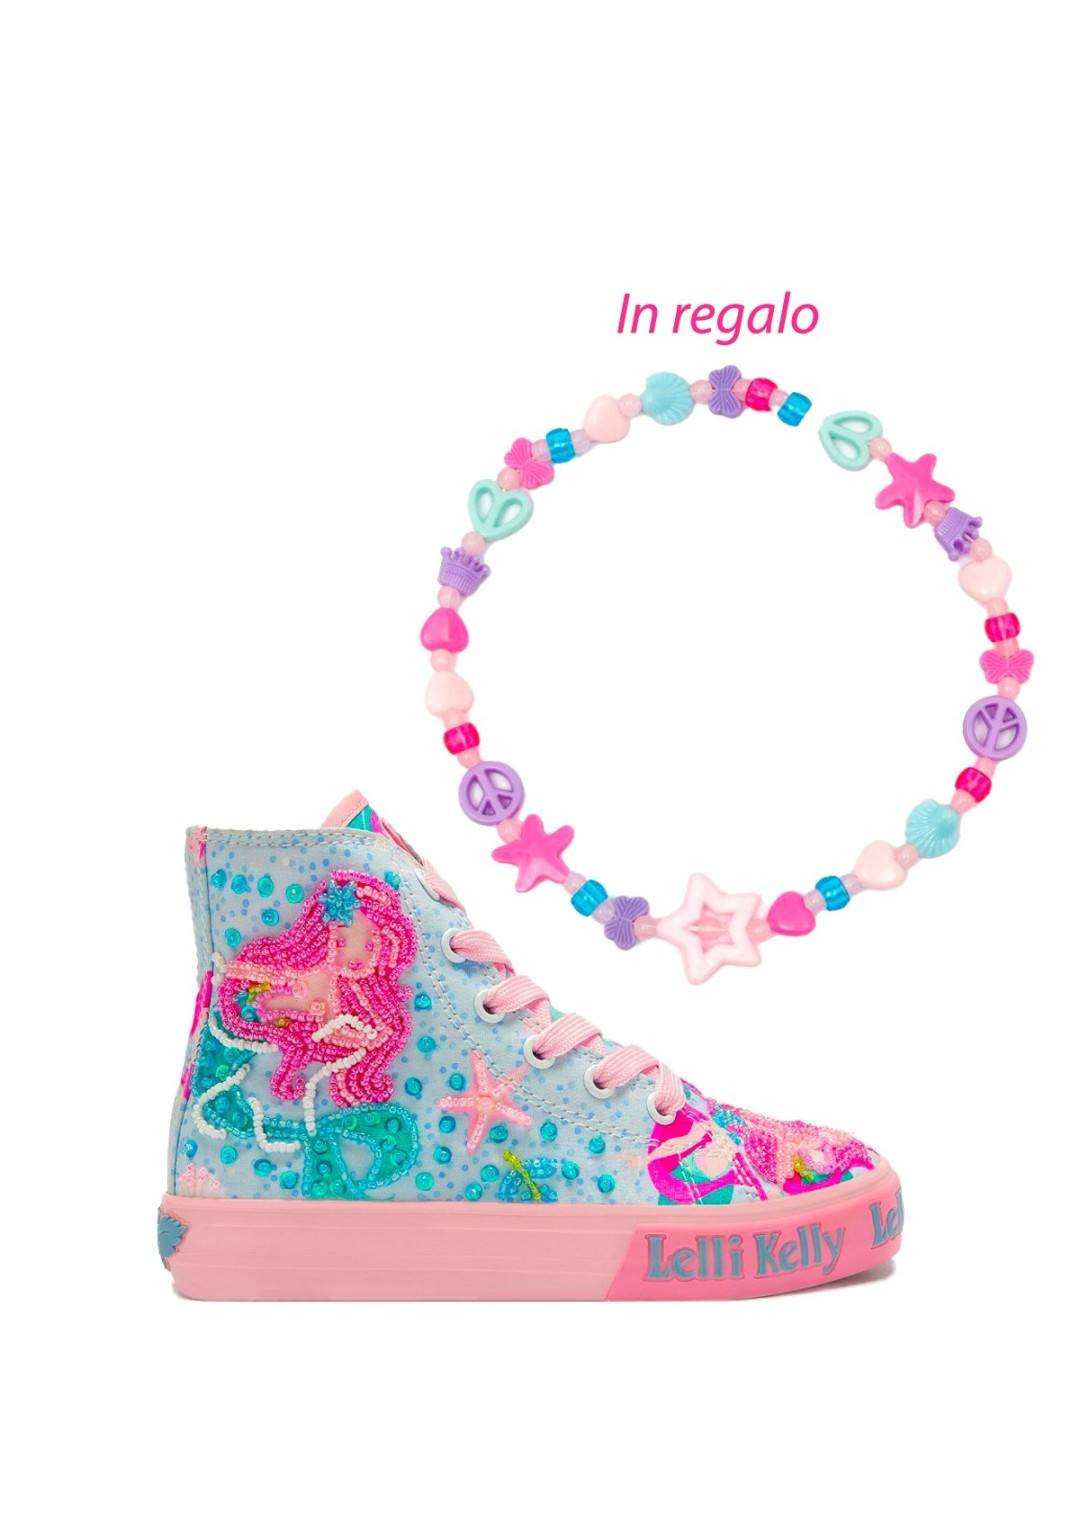 Lelli Kelly - Sneaker Sirena - Bambine e ragazze - LKED3489